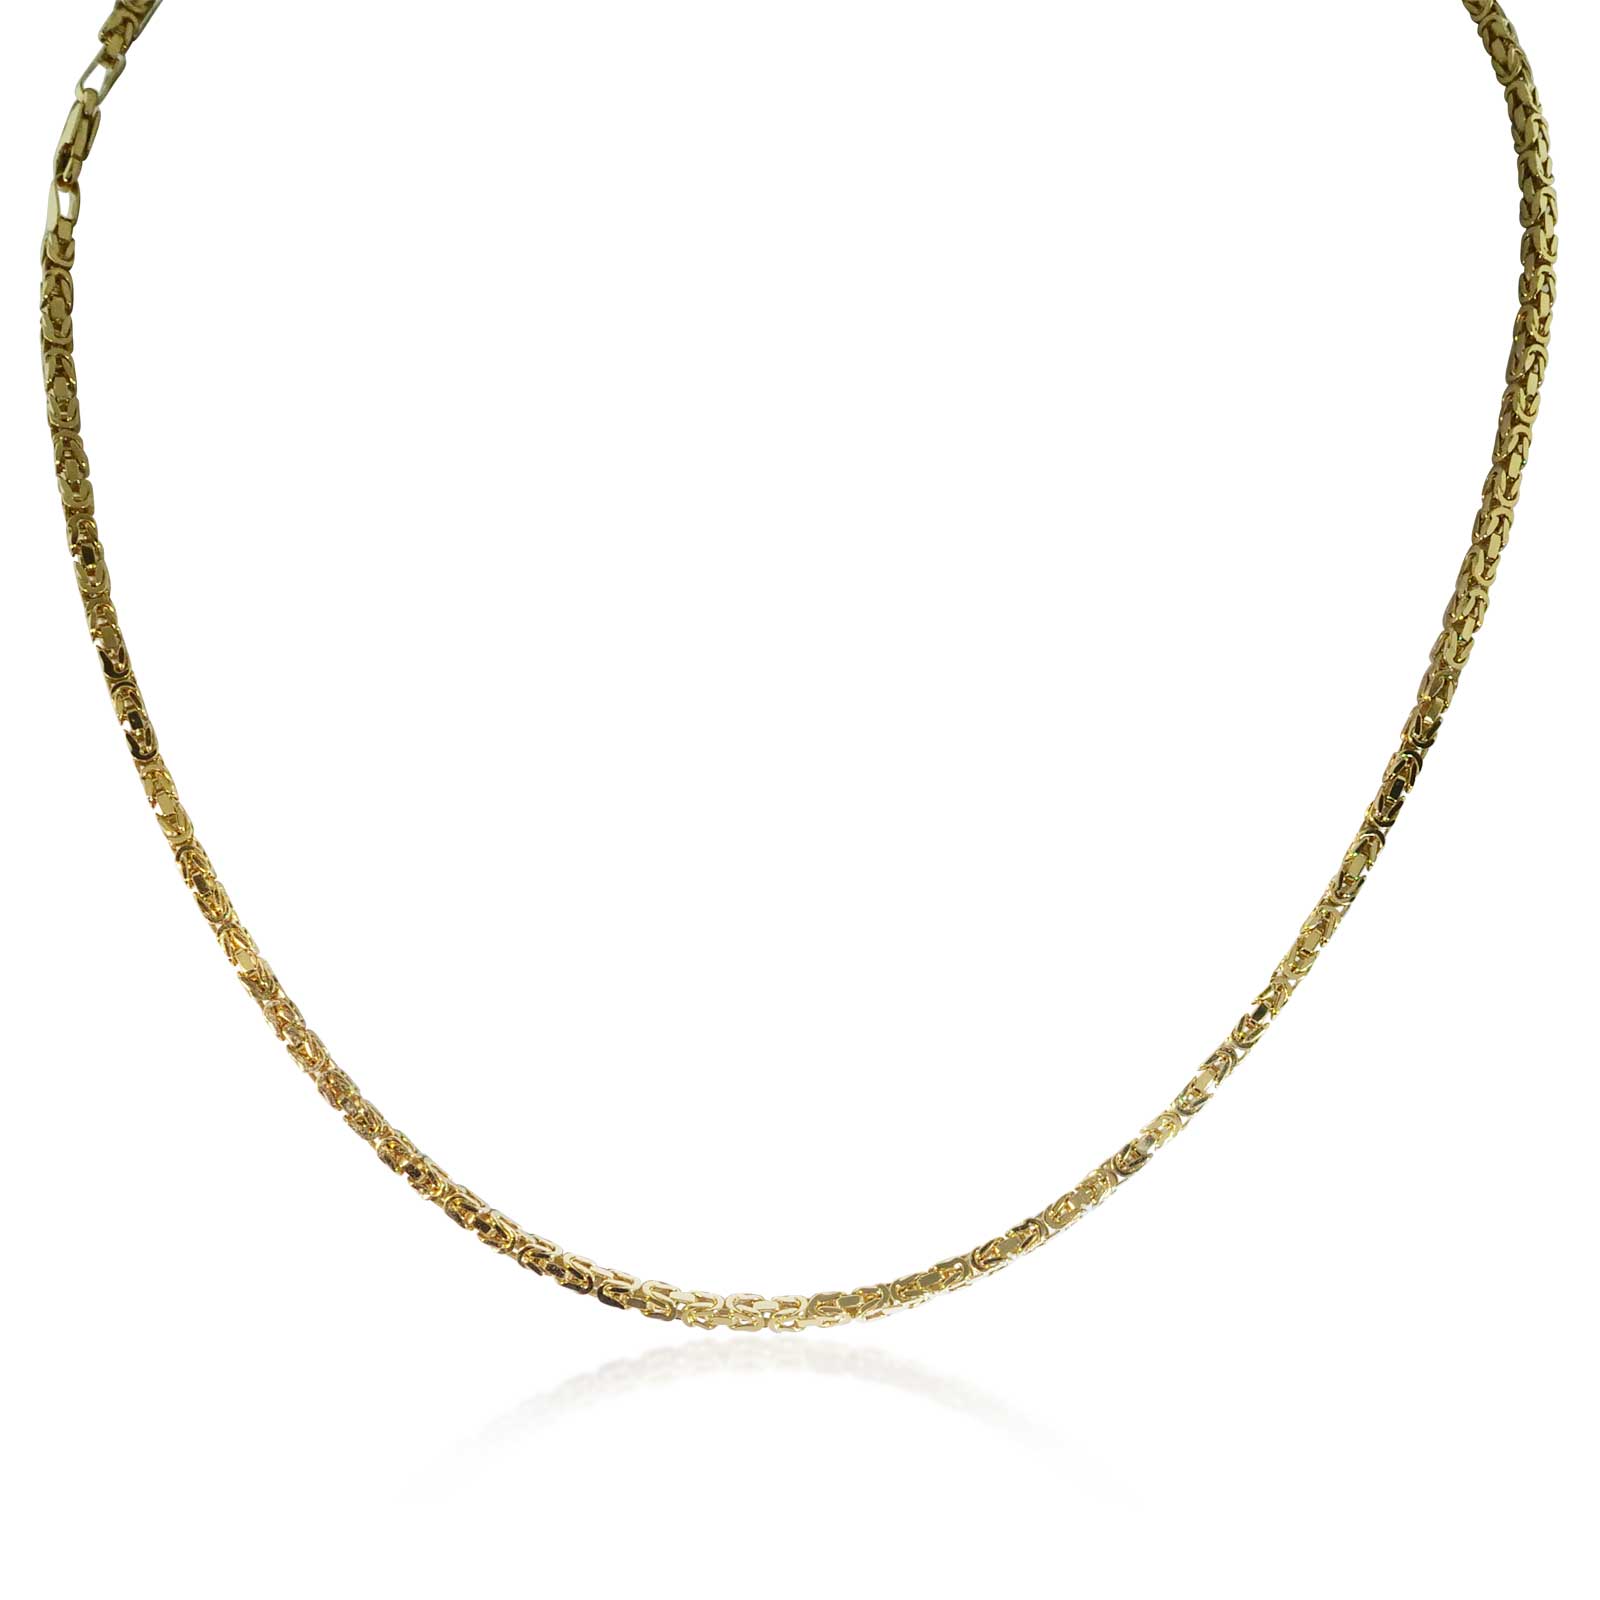 Gelbgold-kordelkette 585 mit goldenen Kugeln, 78cm Länge